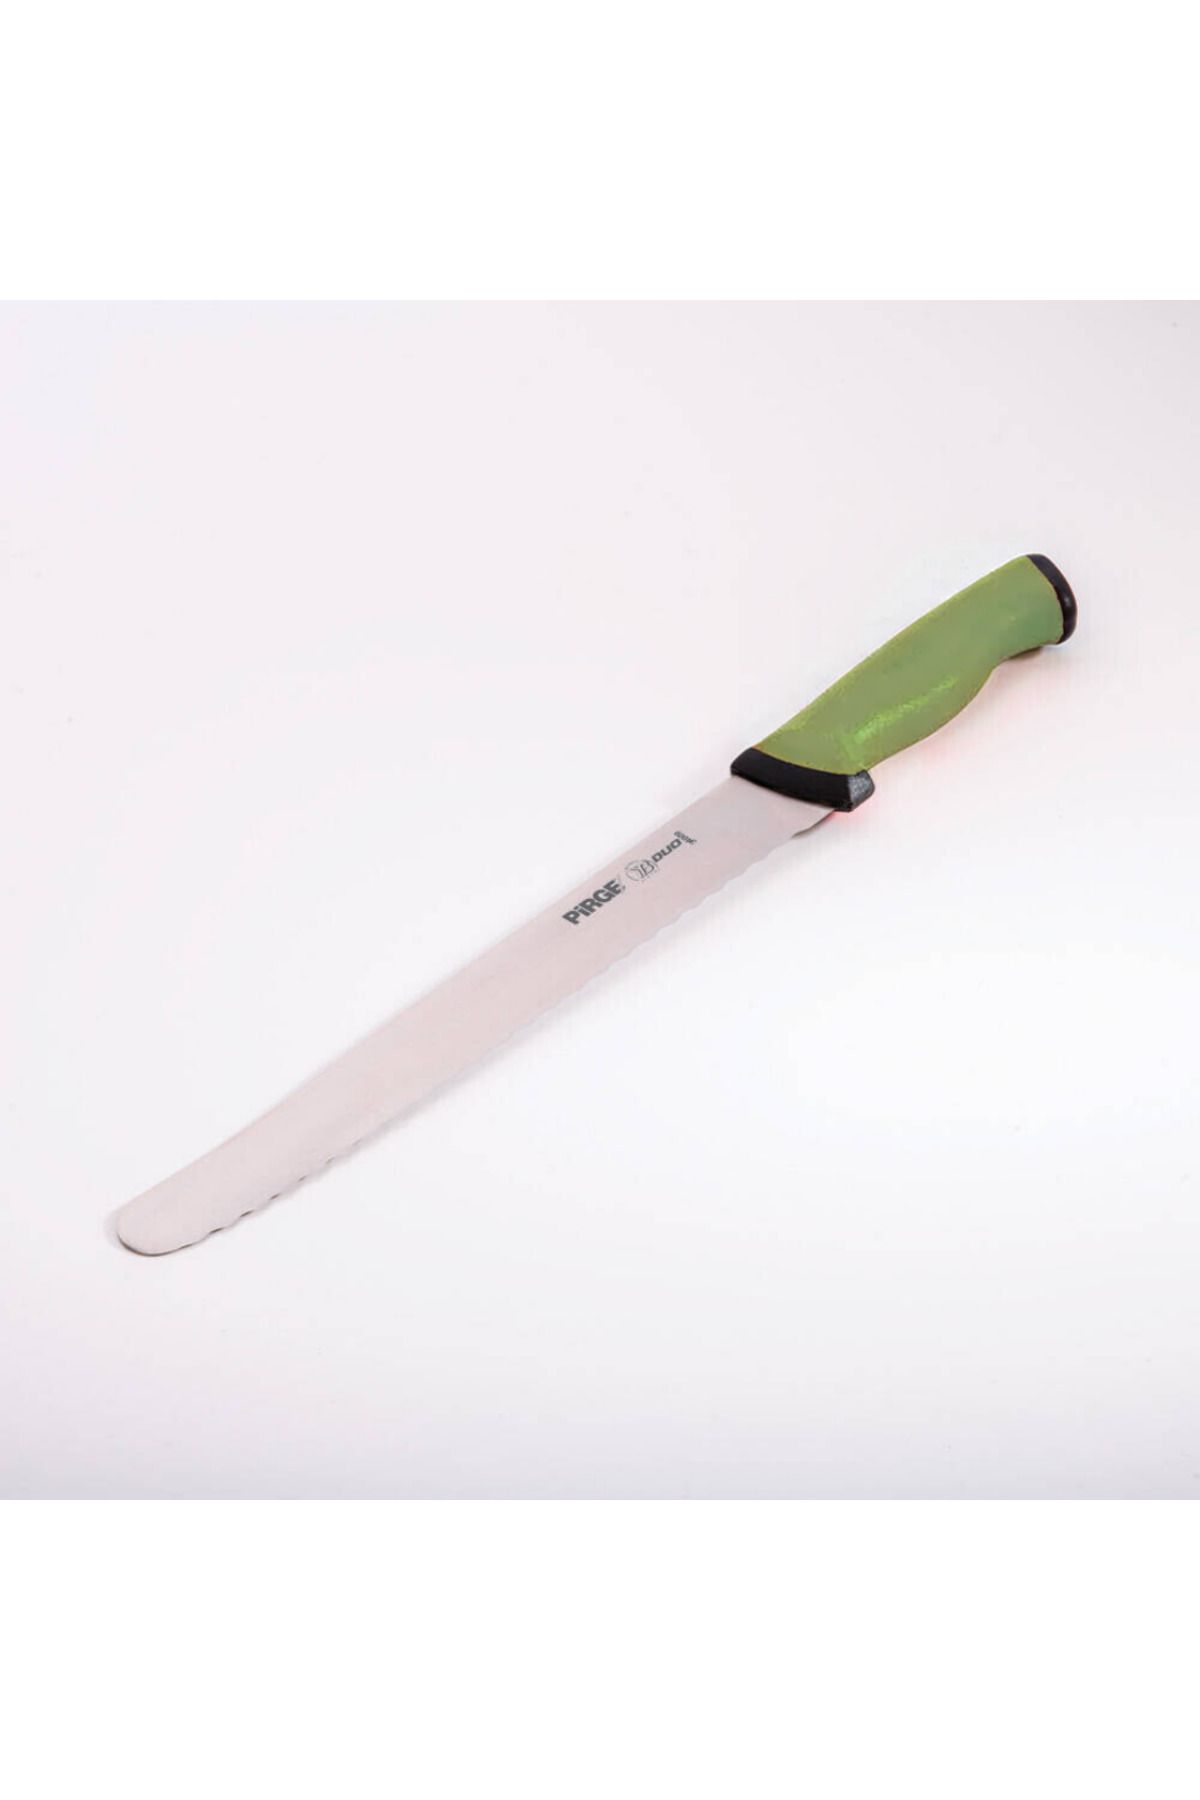 Pirge Duo Ekmek Bıçağı Pro 22,5 cm YEŞİL - 34009